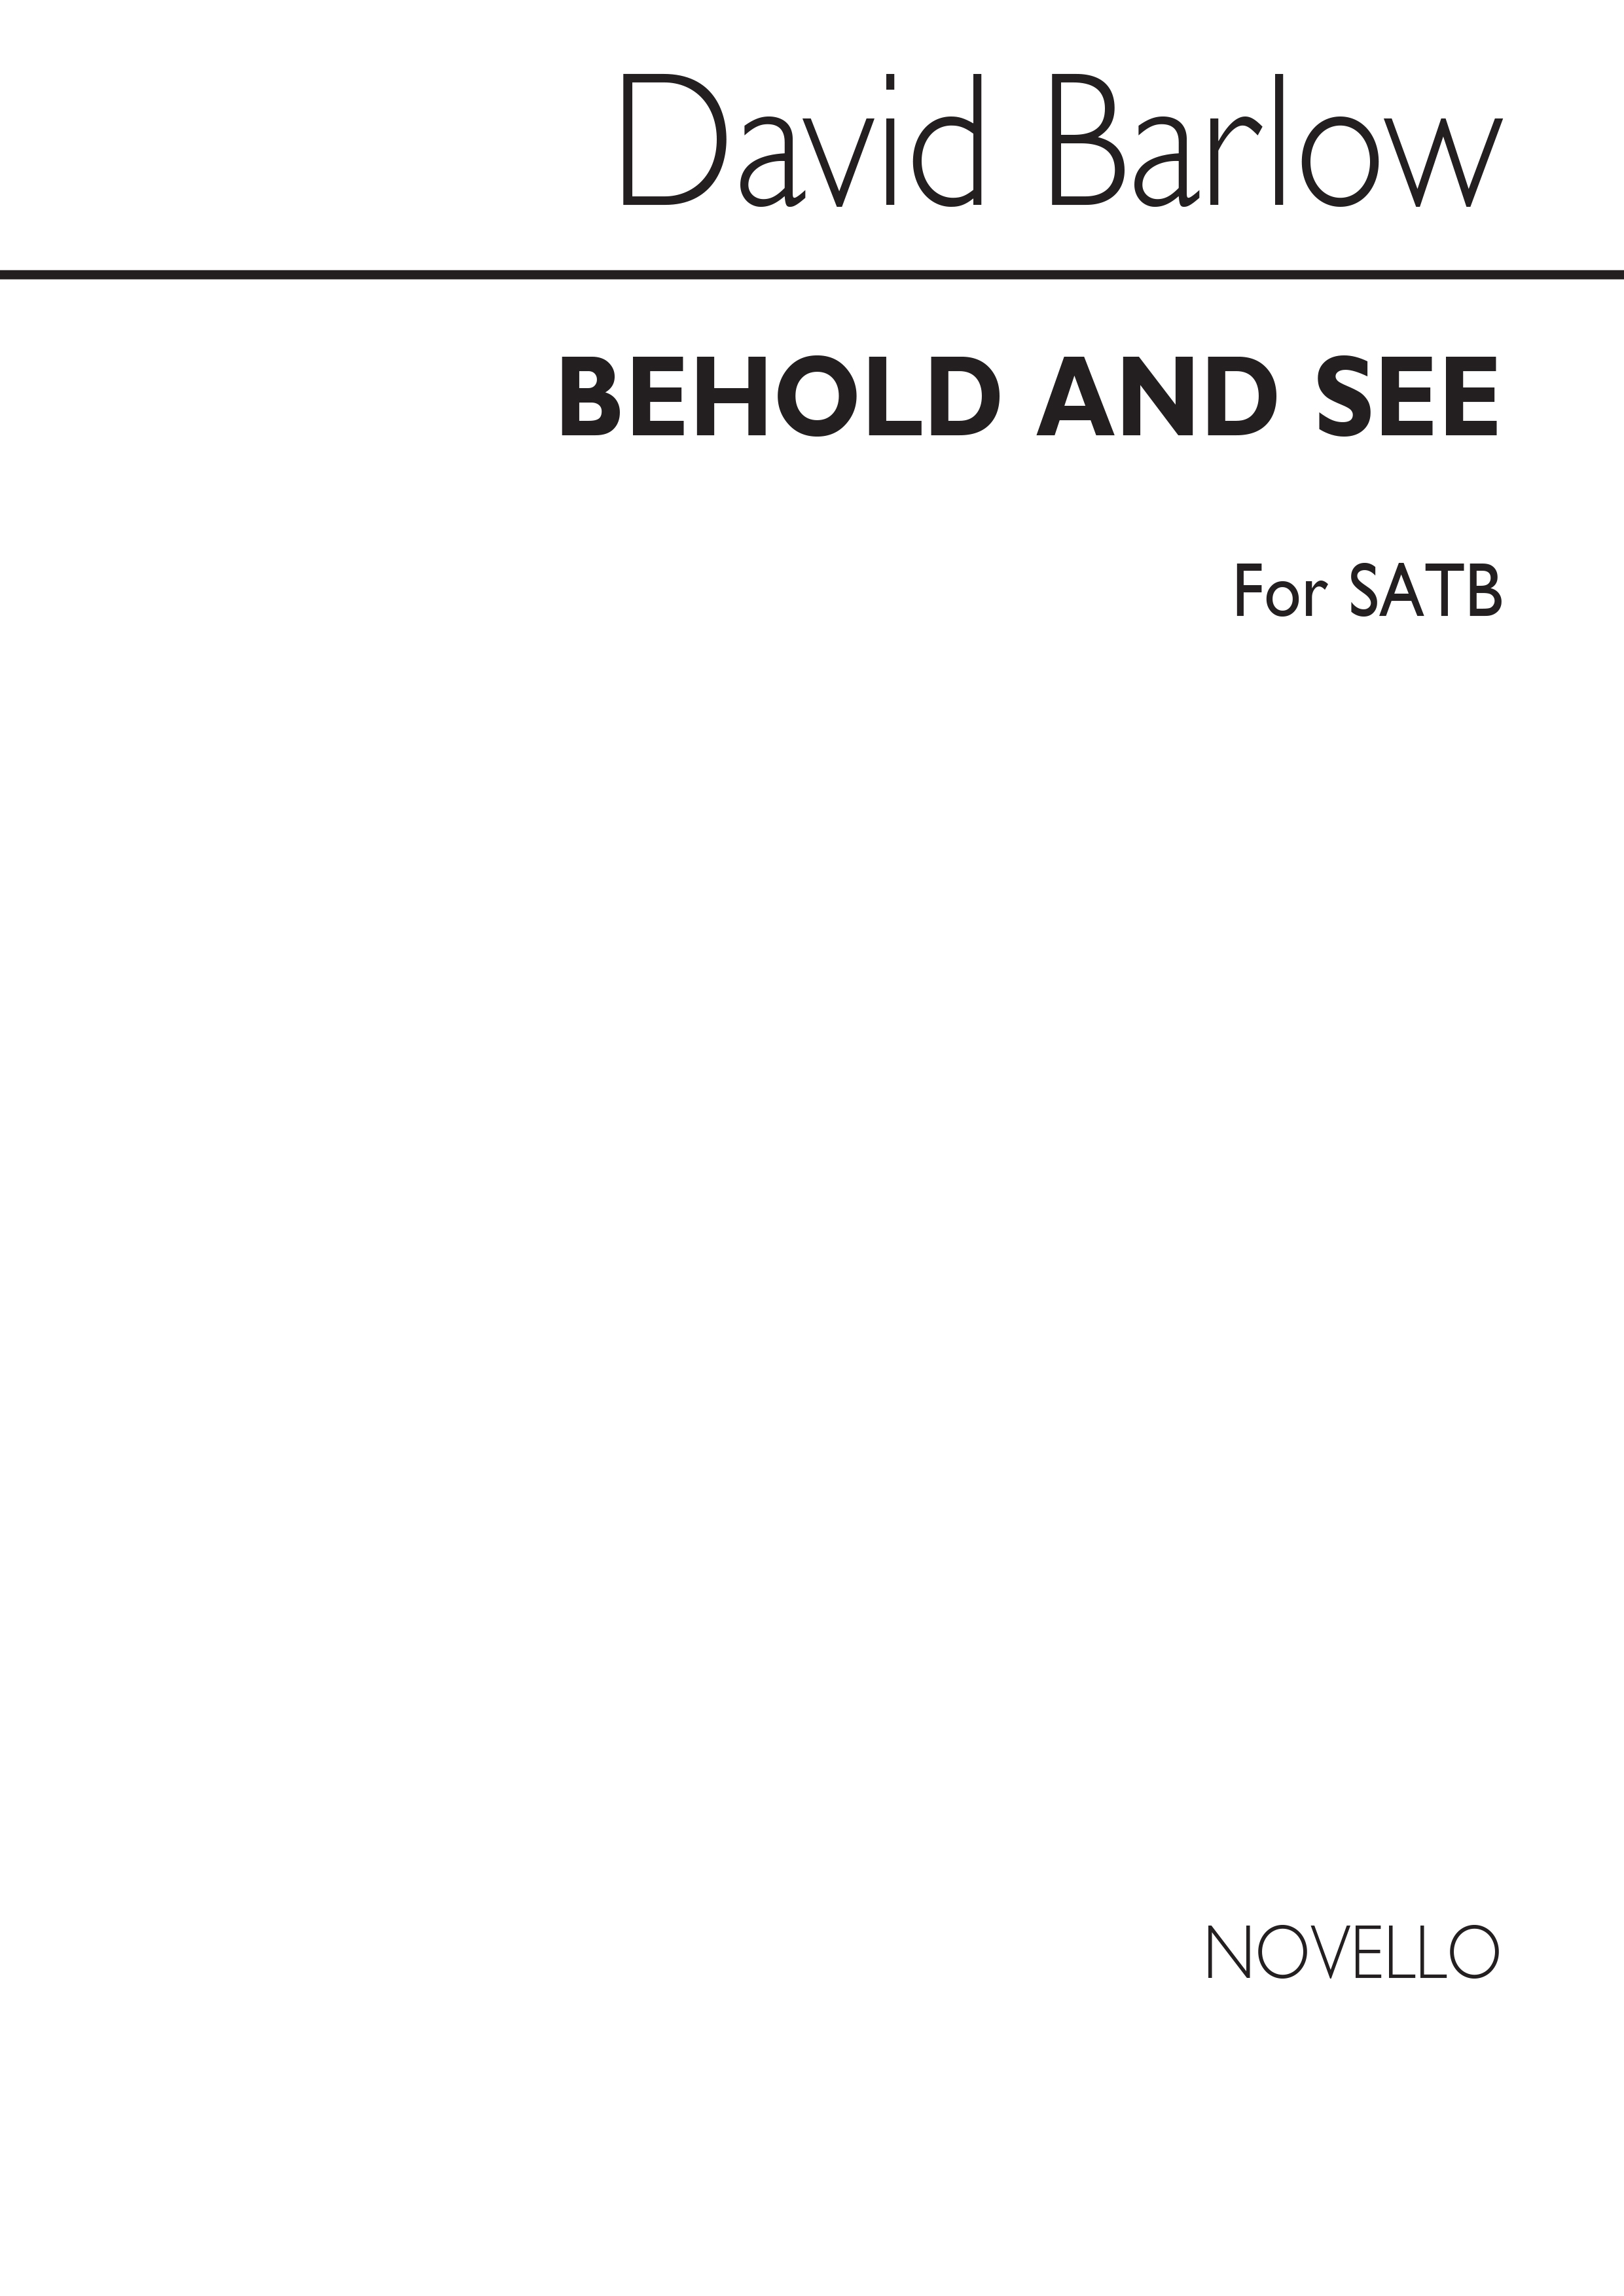 Barlow: Behold, And See for SATB Chorus